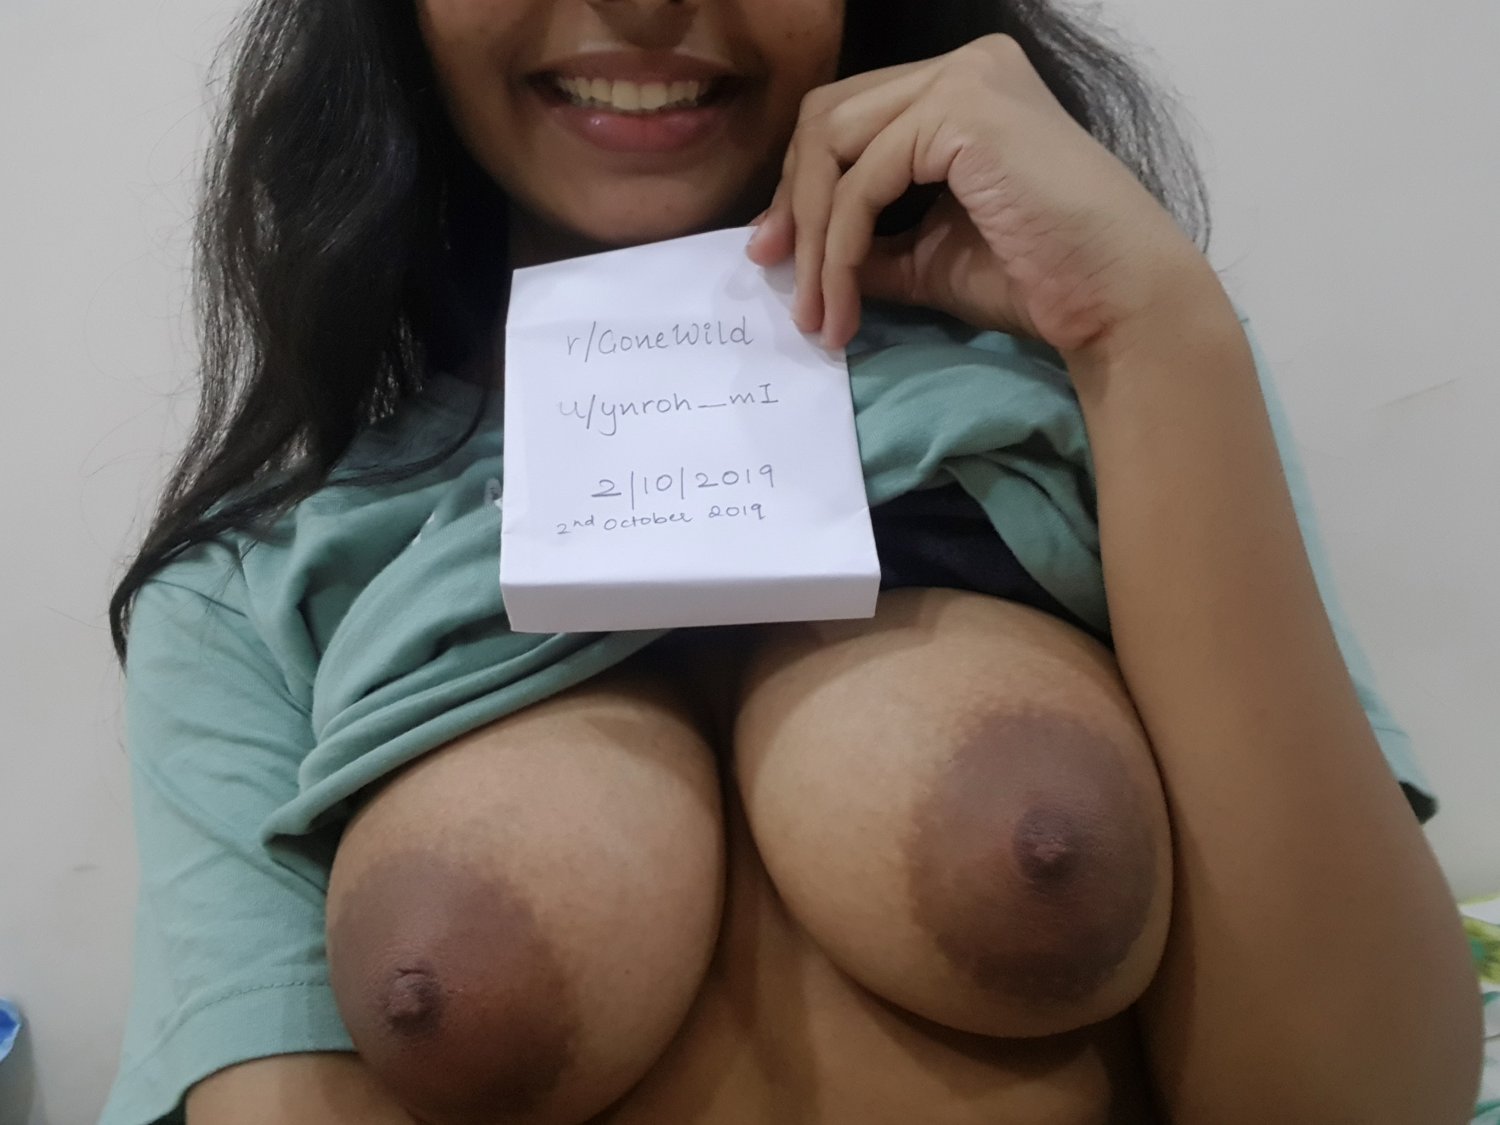 Indian reddit girl gone wild for camera - VsfjFbFX Porn